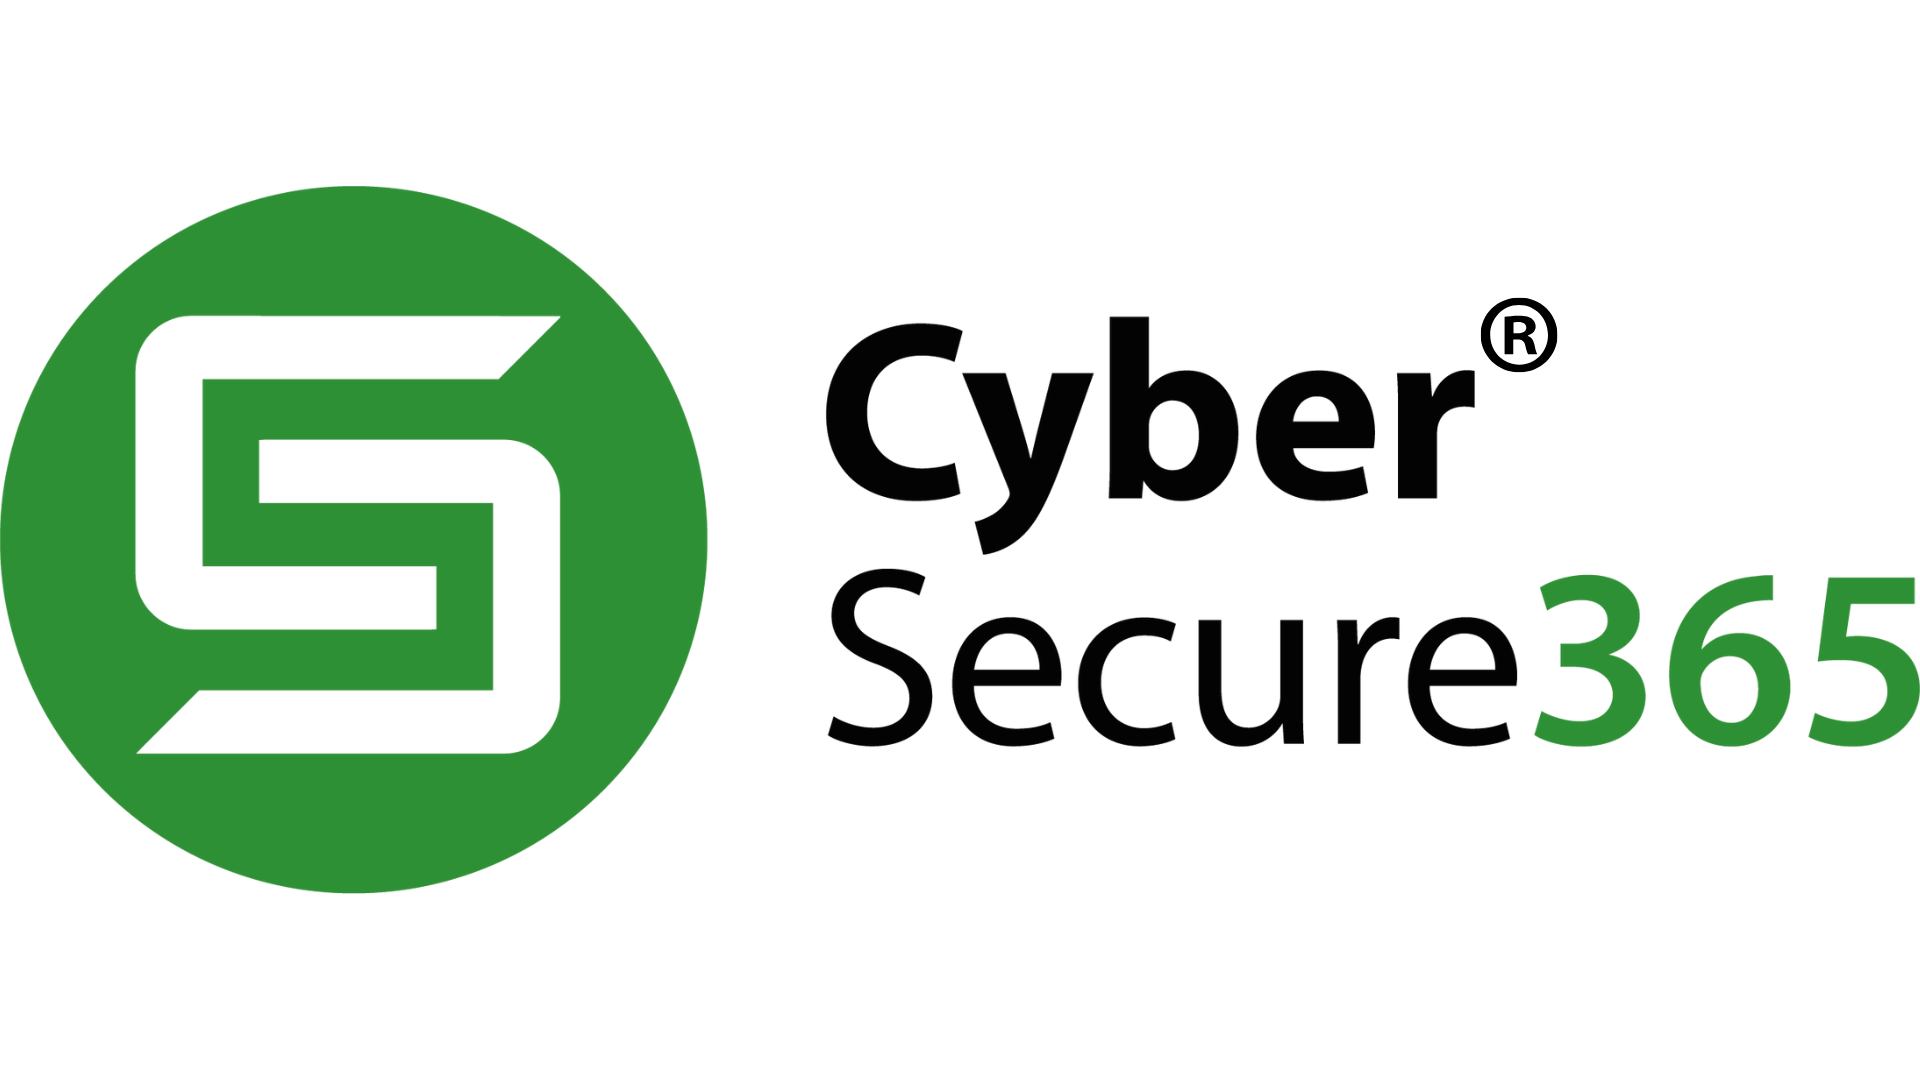 CyberSecure365